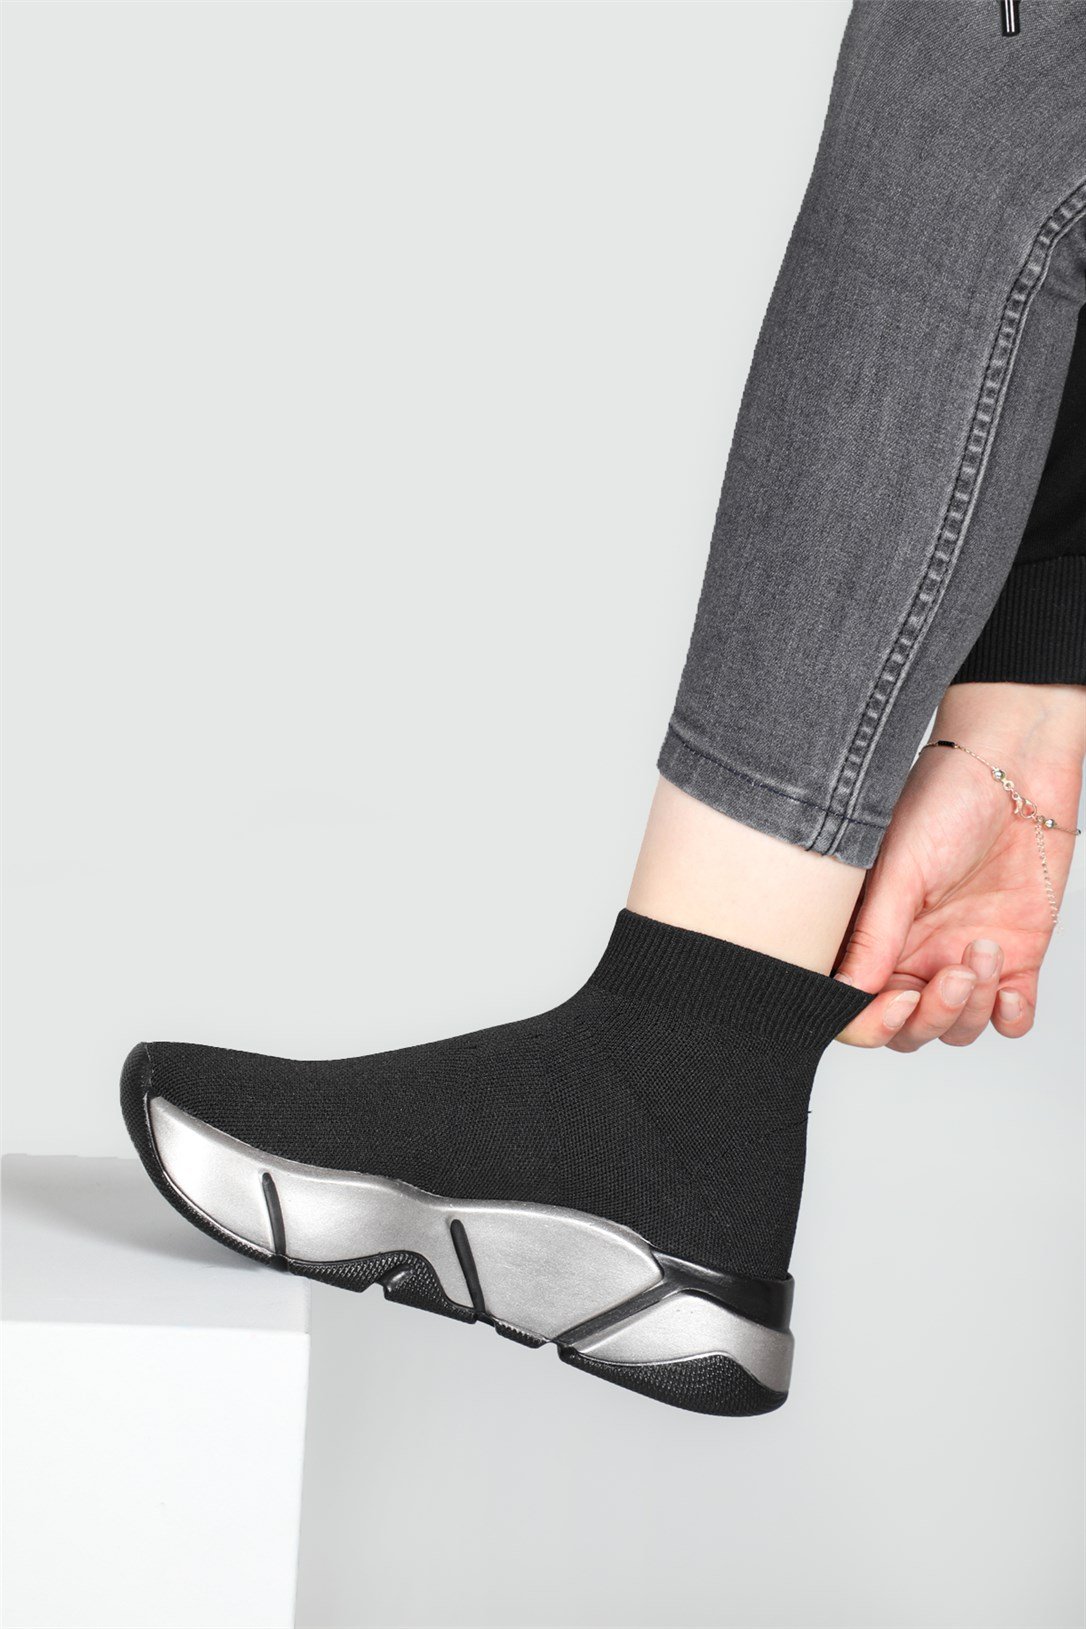 Beınsteps Çorap Model Yüksek Bilekli Sneakers Syh Platin Kadın Spor  Ayakkabı RSL-401 | Ayakkabı City